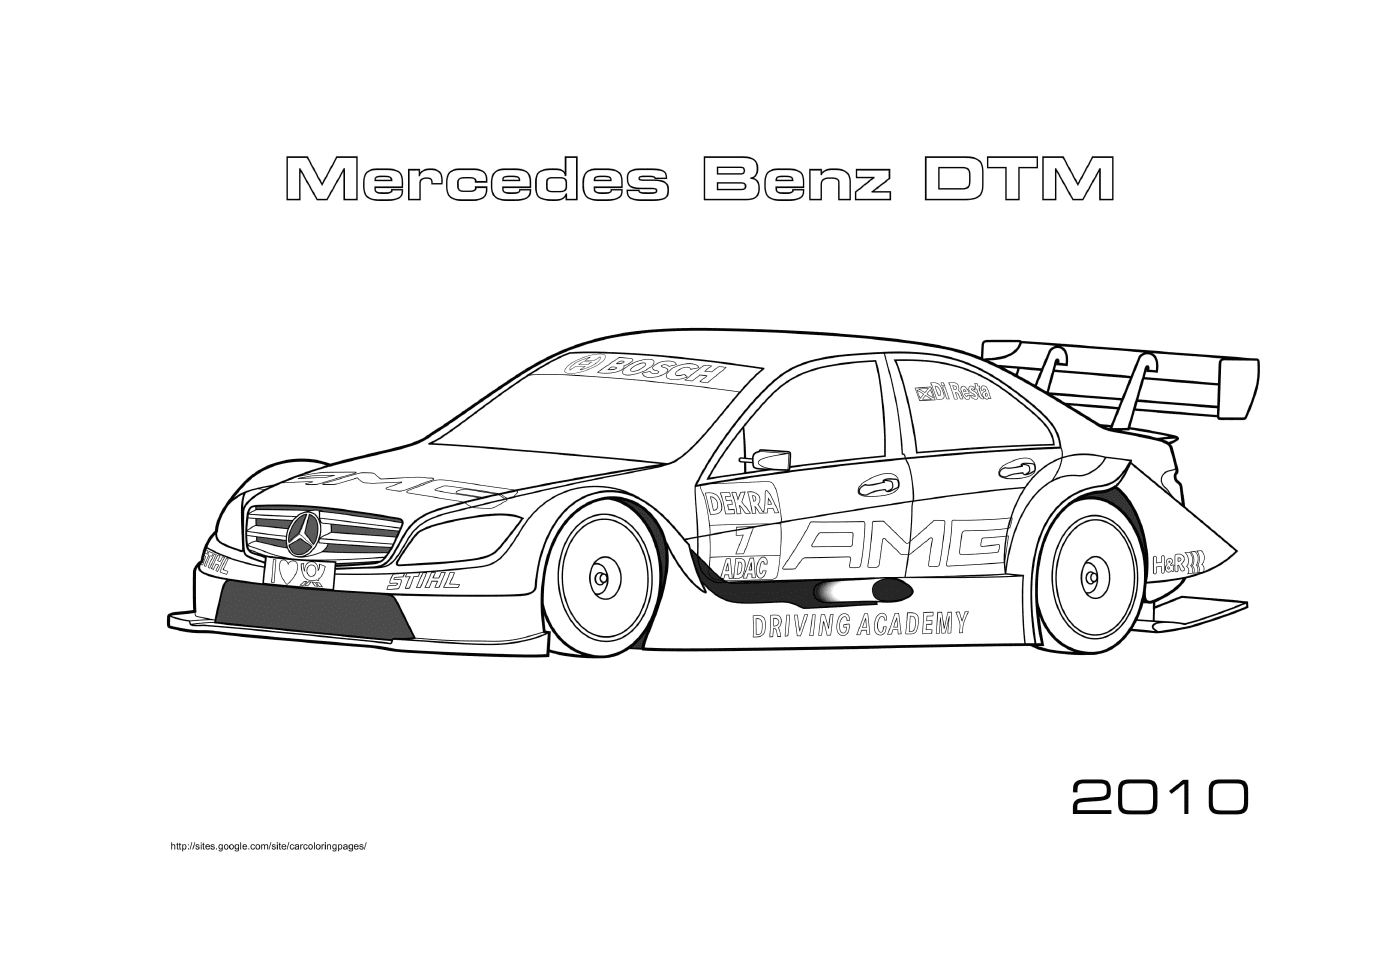  Mercedes Benz DTM 2010, racing car 